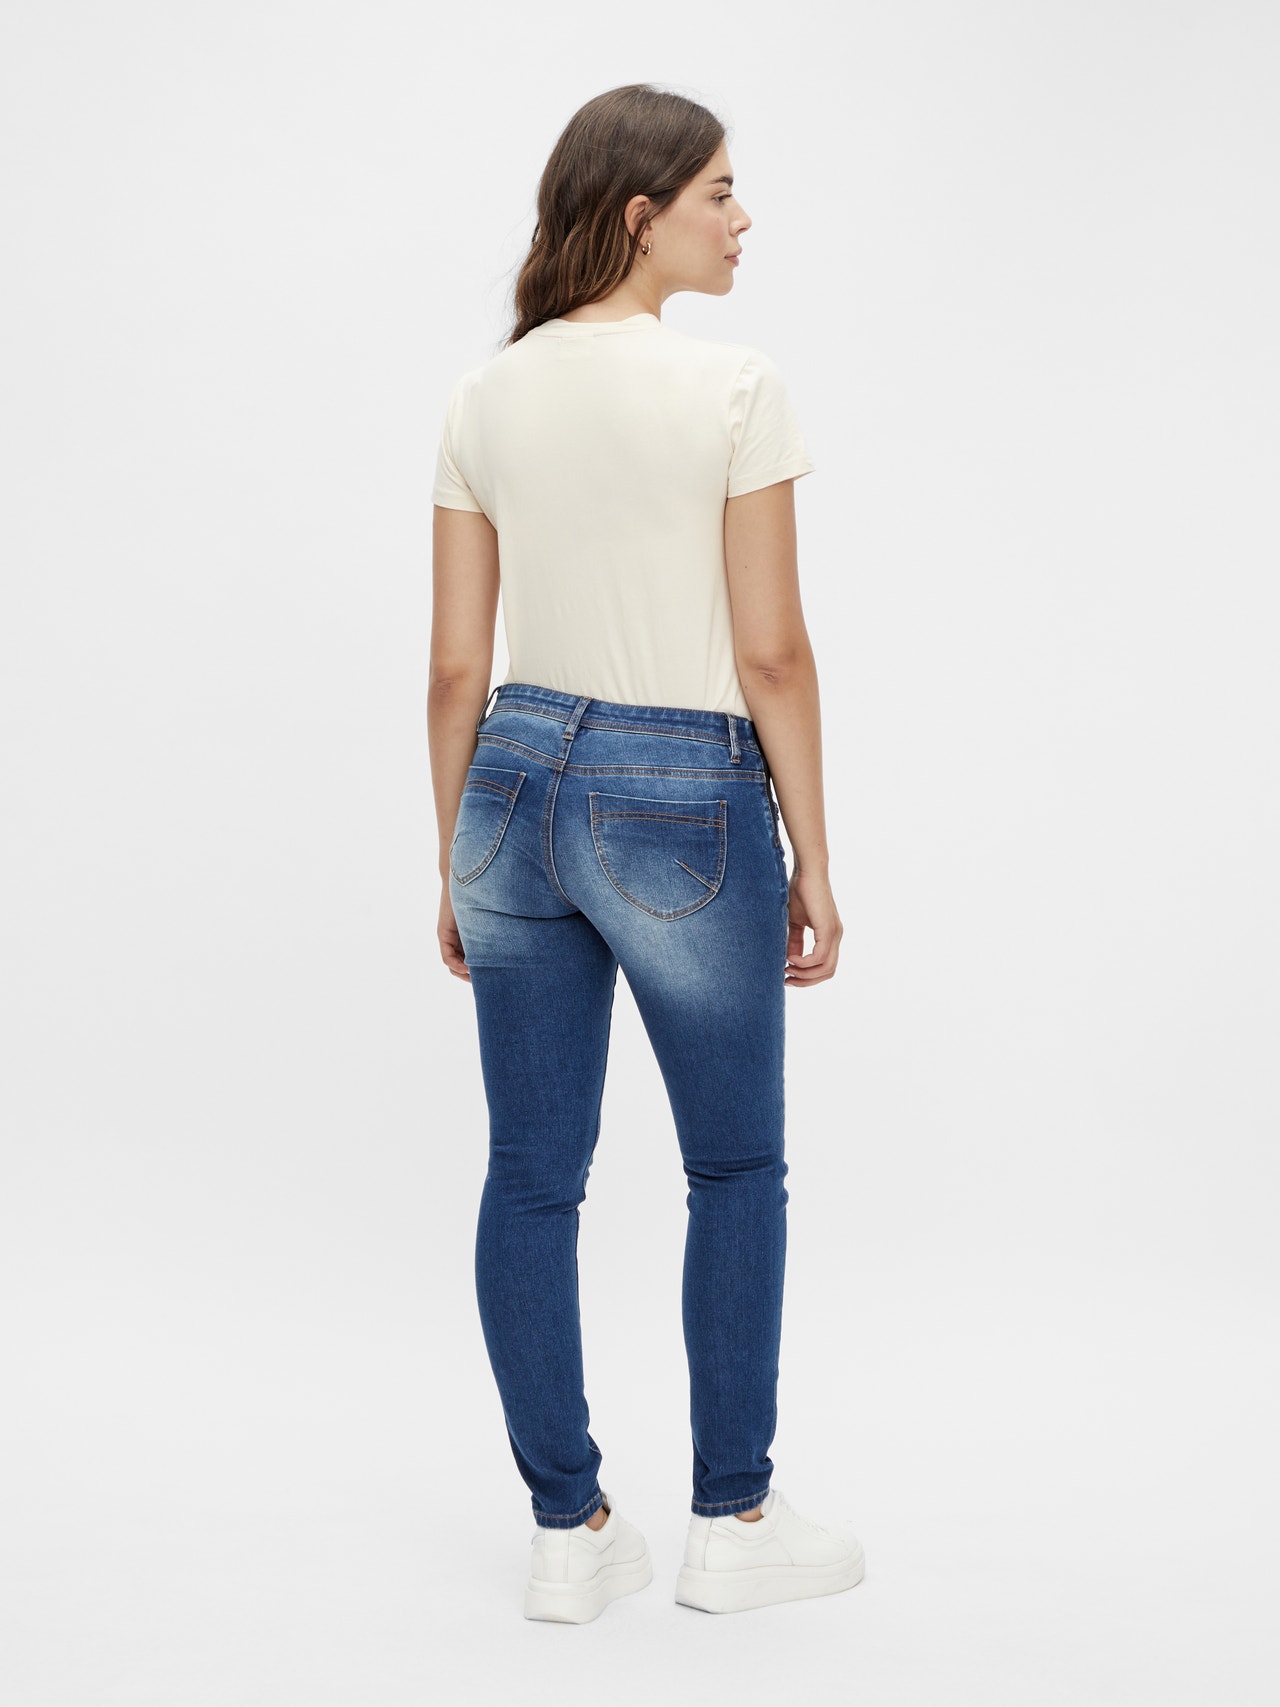 MAMA.LICIOUS Slim Fit Jeans -Medium Blue Denim - 20016422